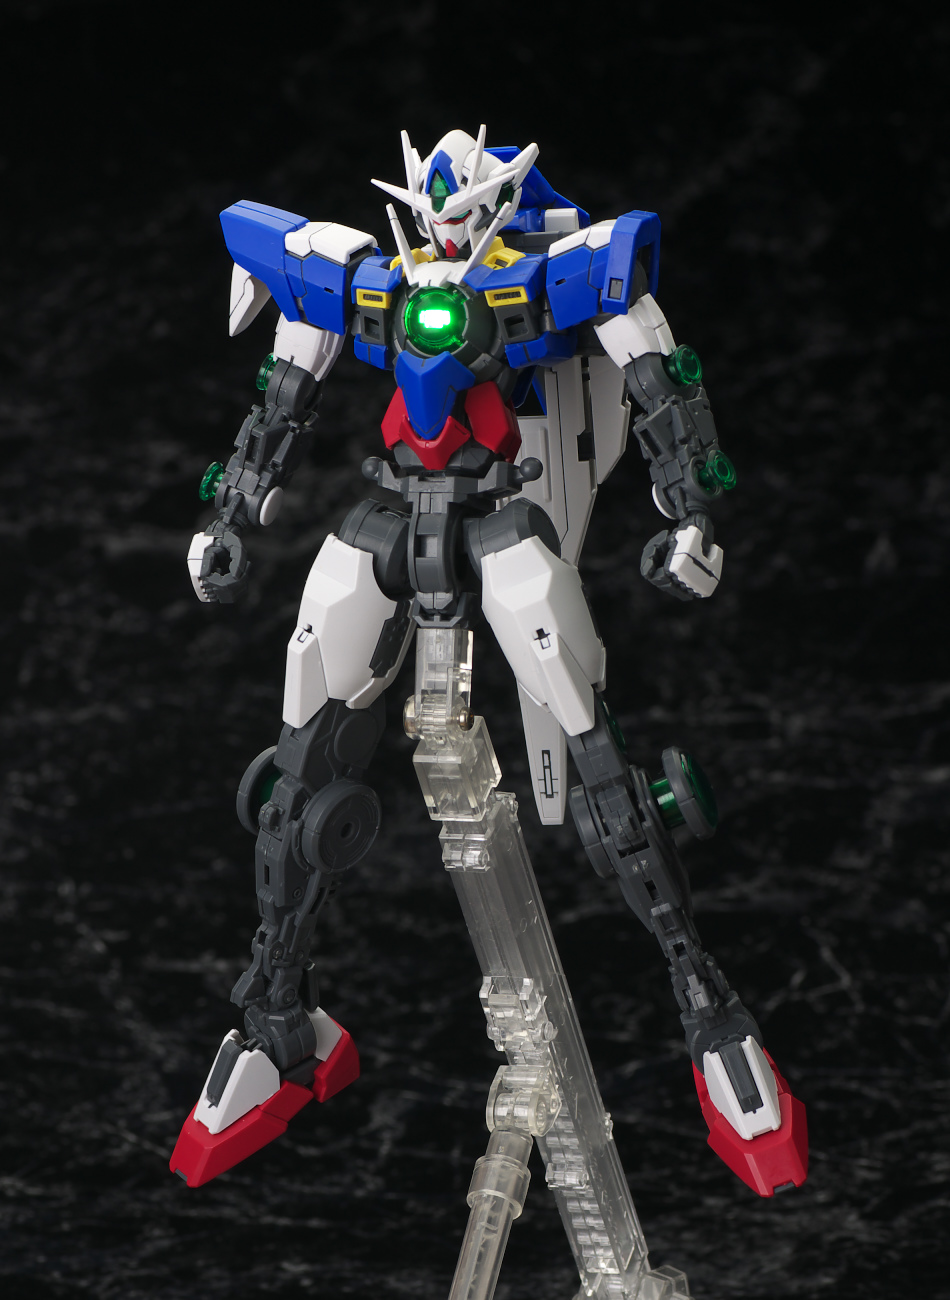 Gunjap Review Mg 1 100 Gundam 00 Qan T No 41 Hi Res Images